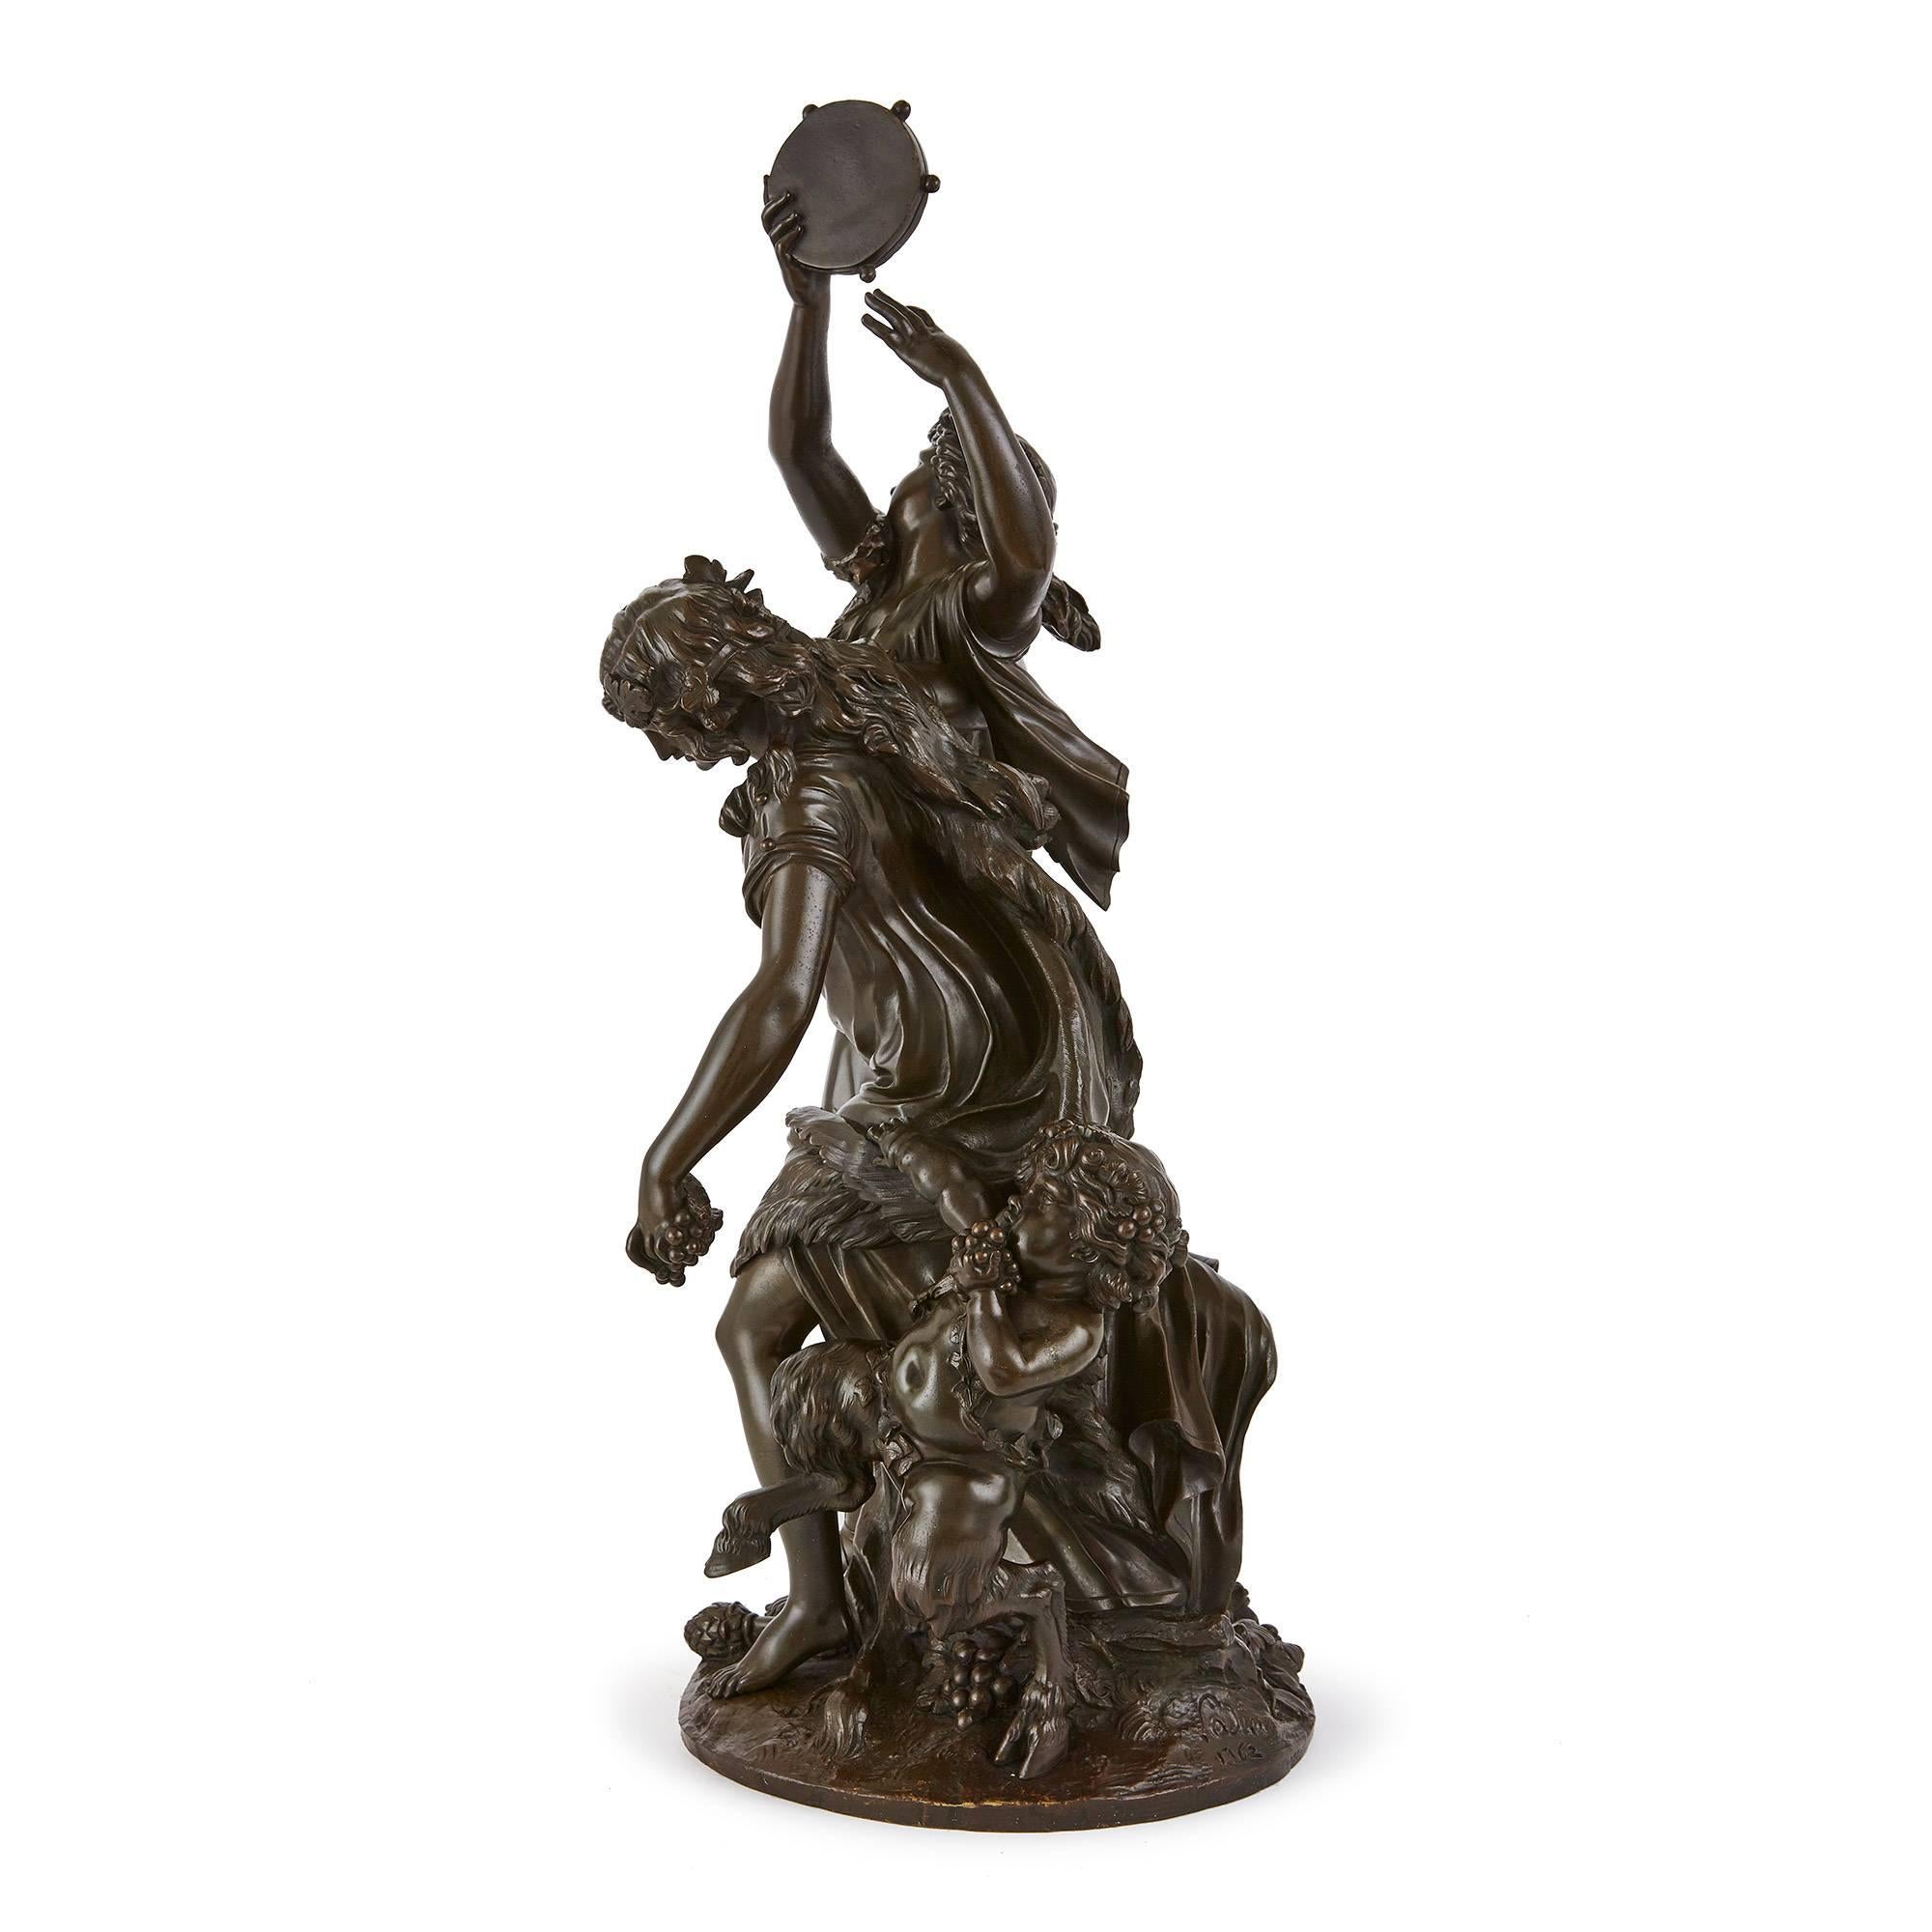 Cette dynamique sculpture en bronze patiné antique est composée de deux figures féminines et d'un satyre capturés dans un moment de danse frénétique et de réjouissances bacchiques. Les femmes sont vêtues de tuniques fluides et leurs silhouettes sont